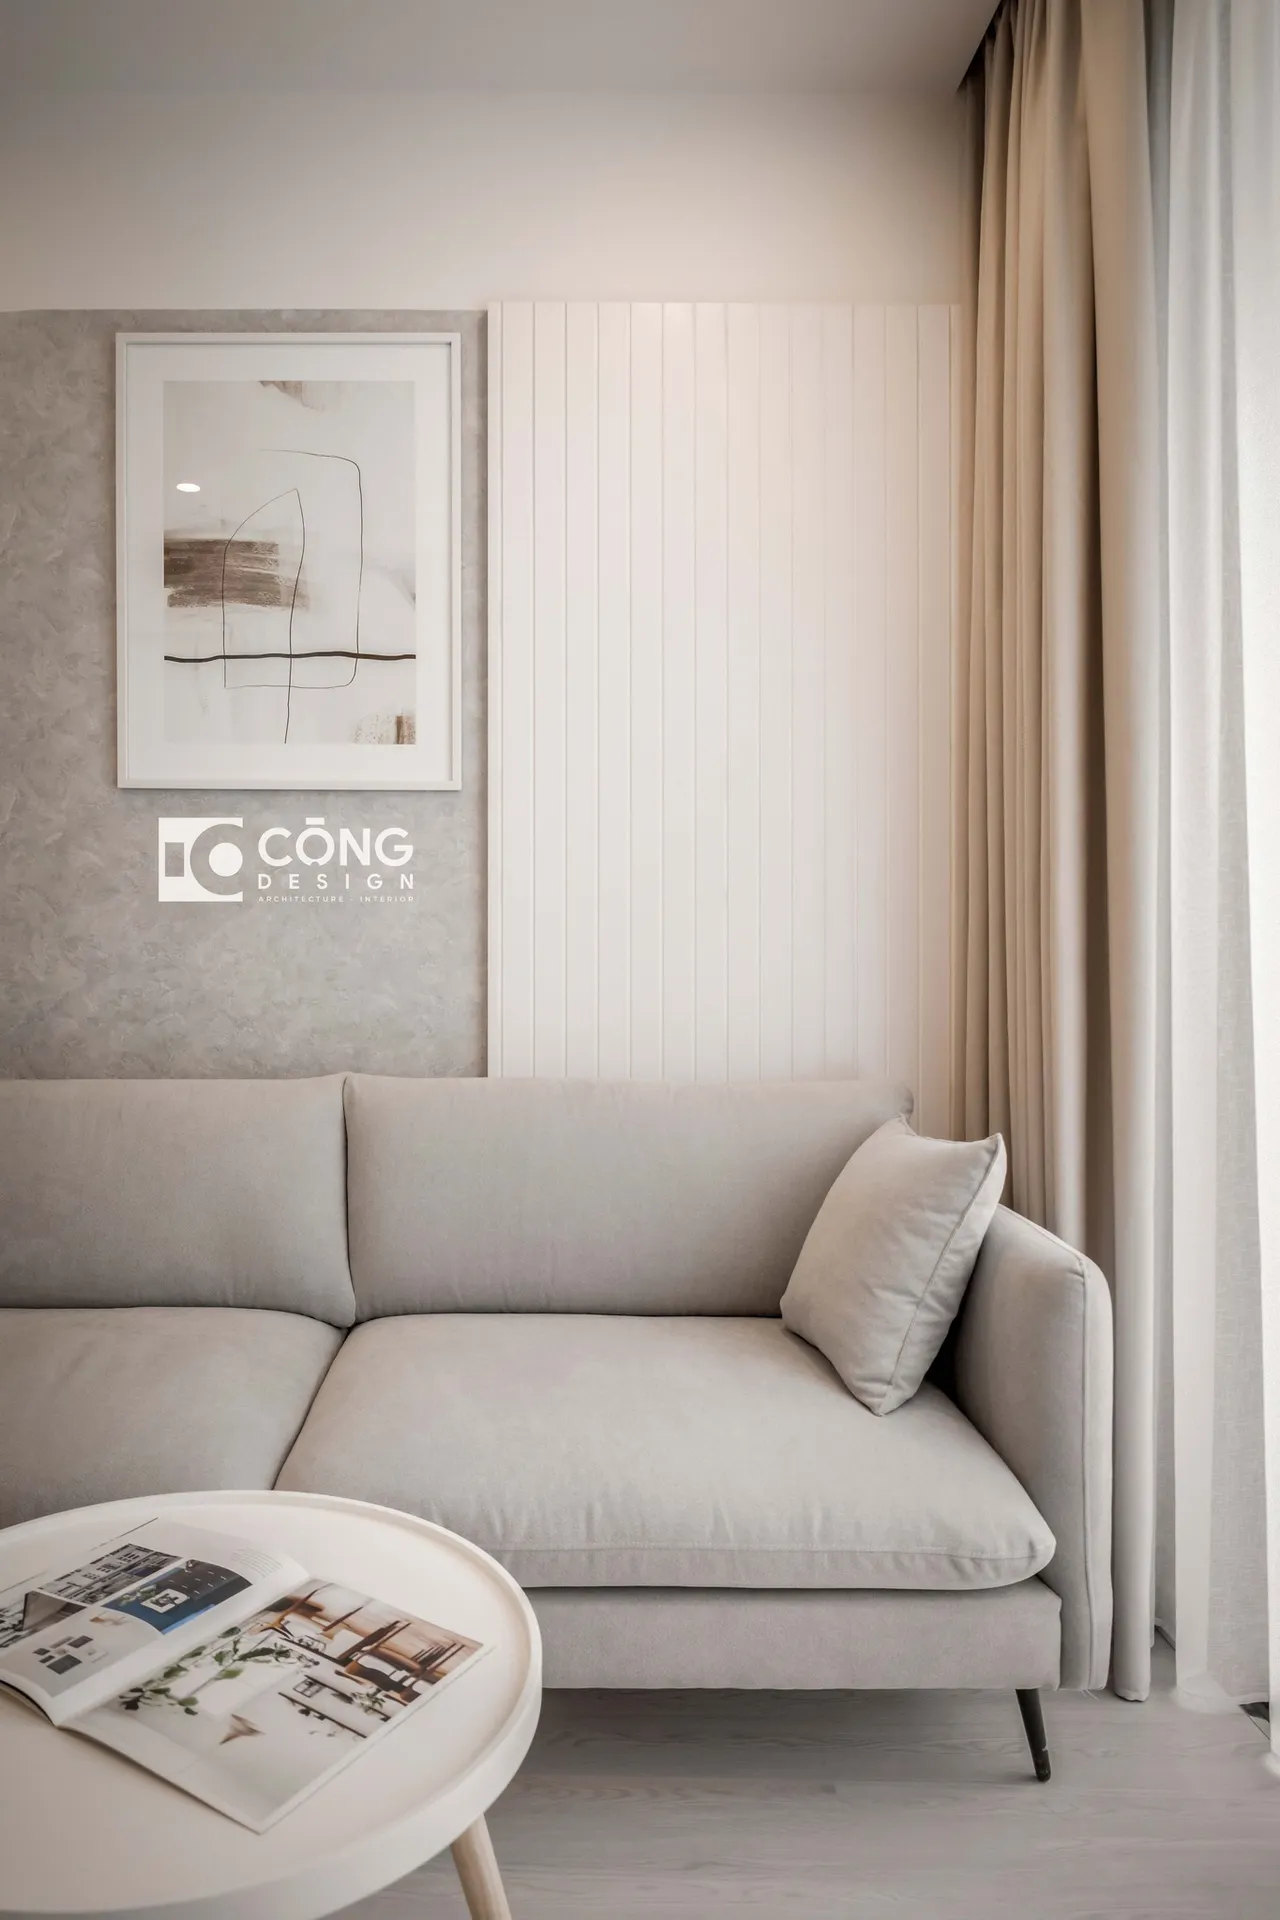 Hoàn thiện nội thất phòng khách Căn hộ S1001 Vinhomes Grand Park phong cách Tối giản Minimalist